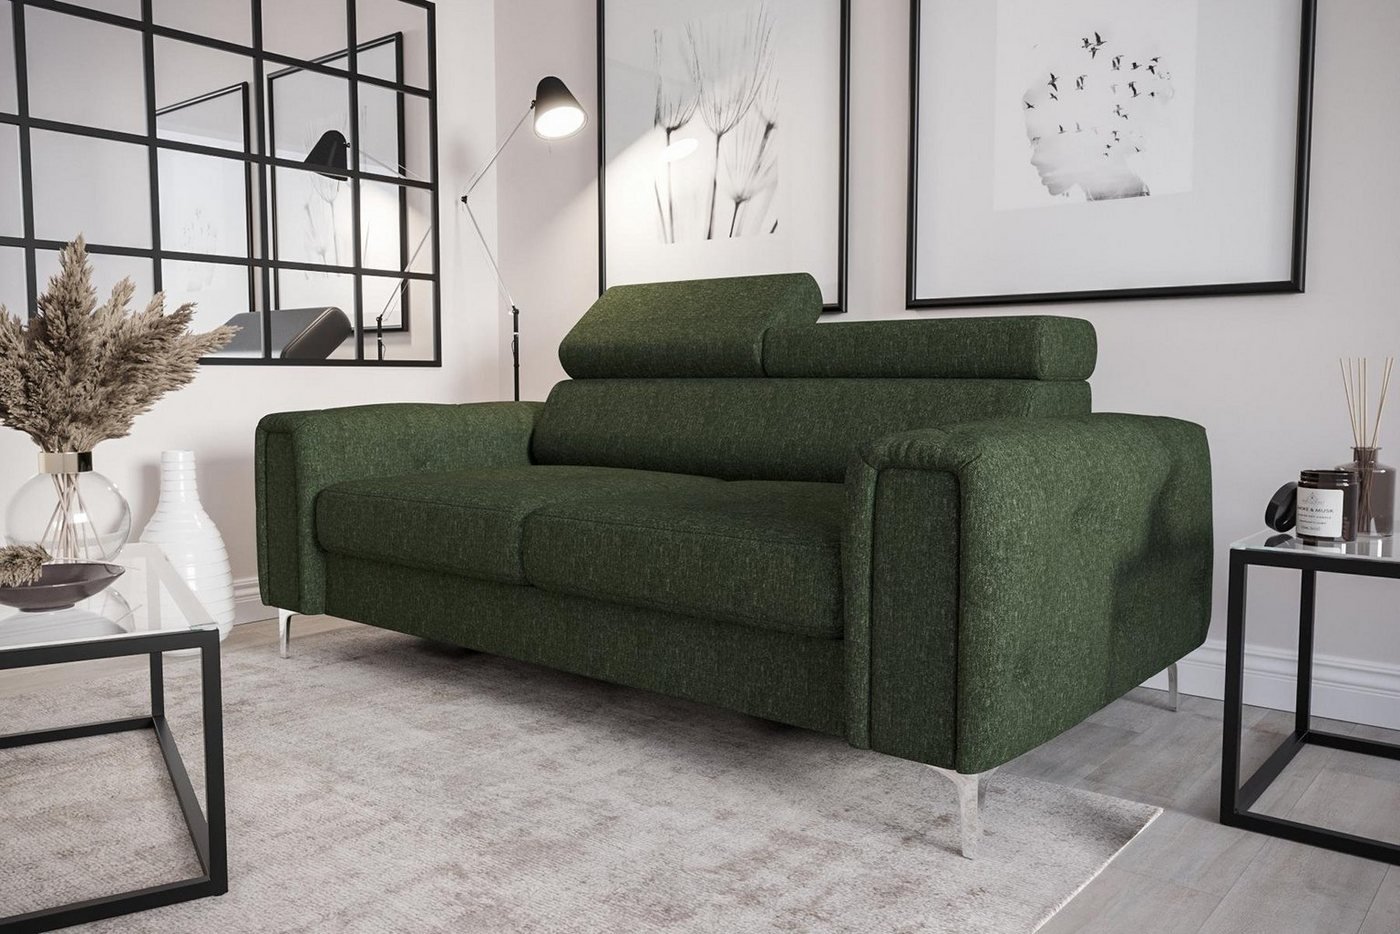 JVmoebel Sofa Designer 2-Sitzer Sofa Couchen Luxus Polster Möbel Sofa Couch Sitz, Made in Europe von JVmoebel